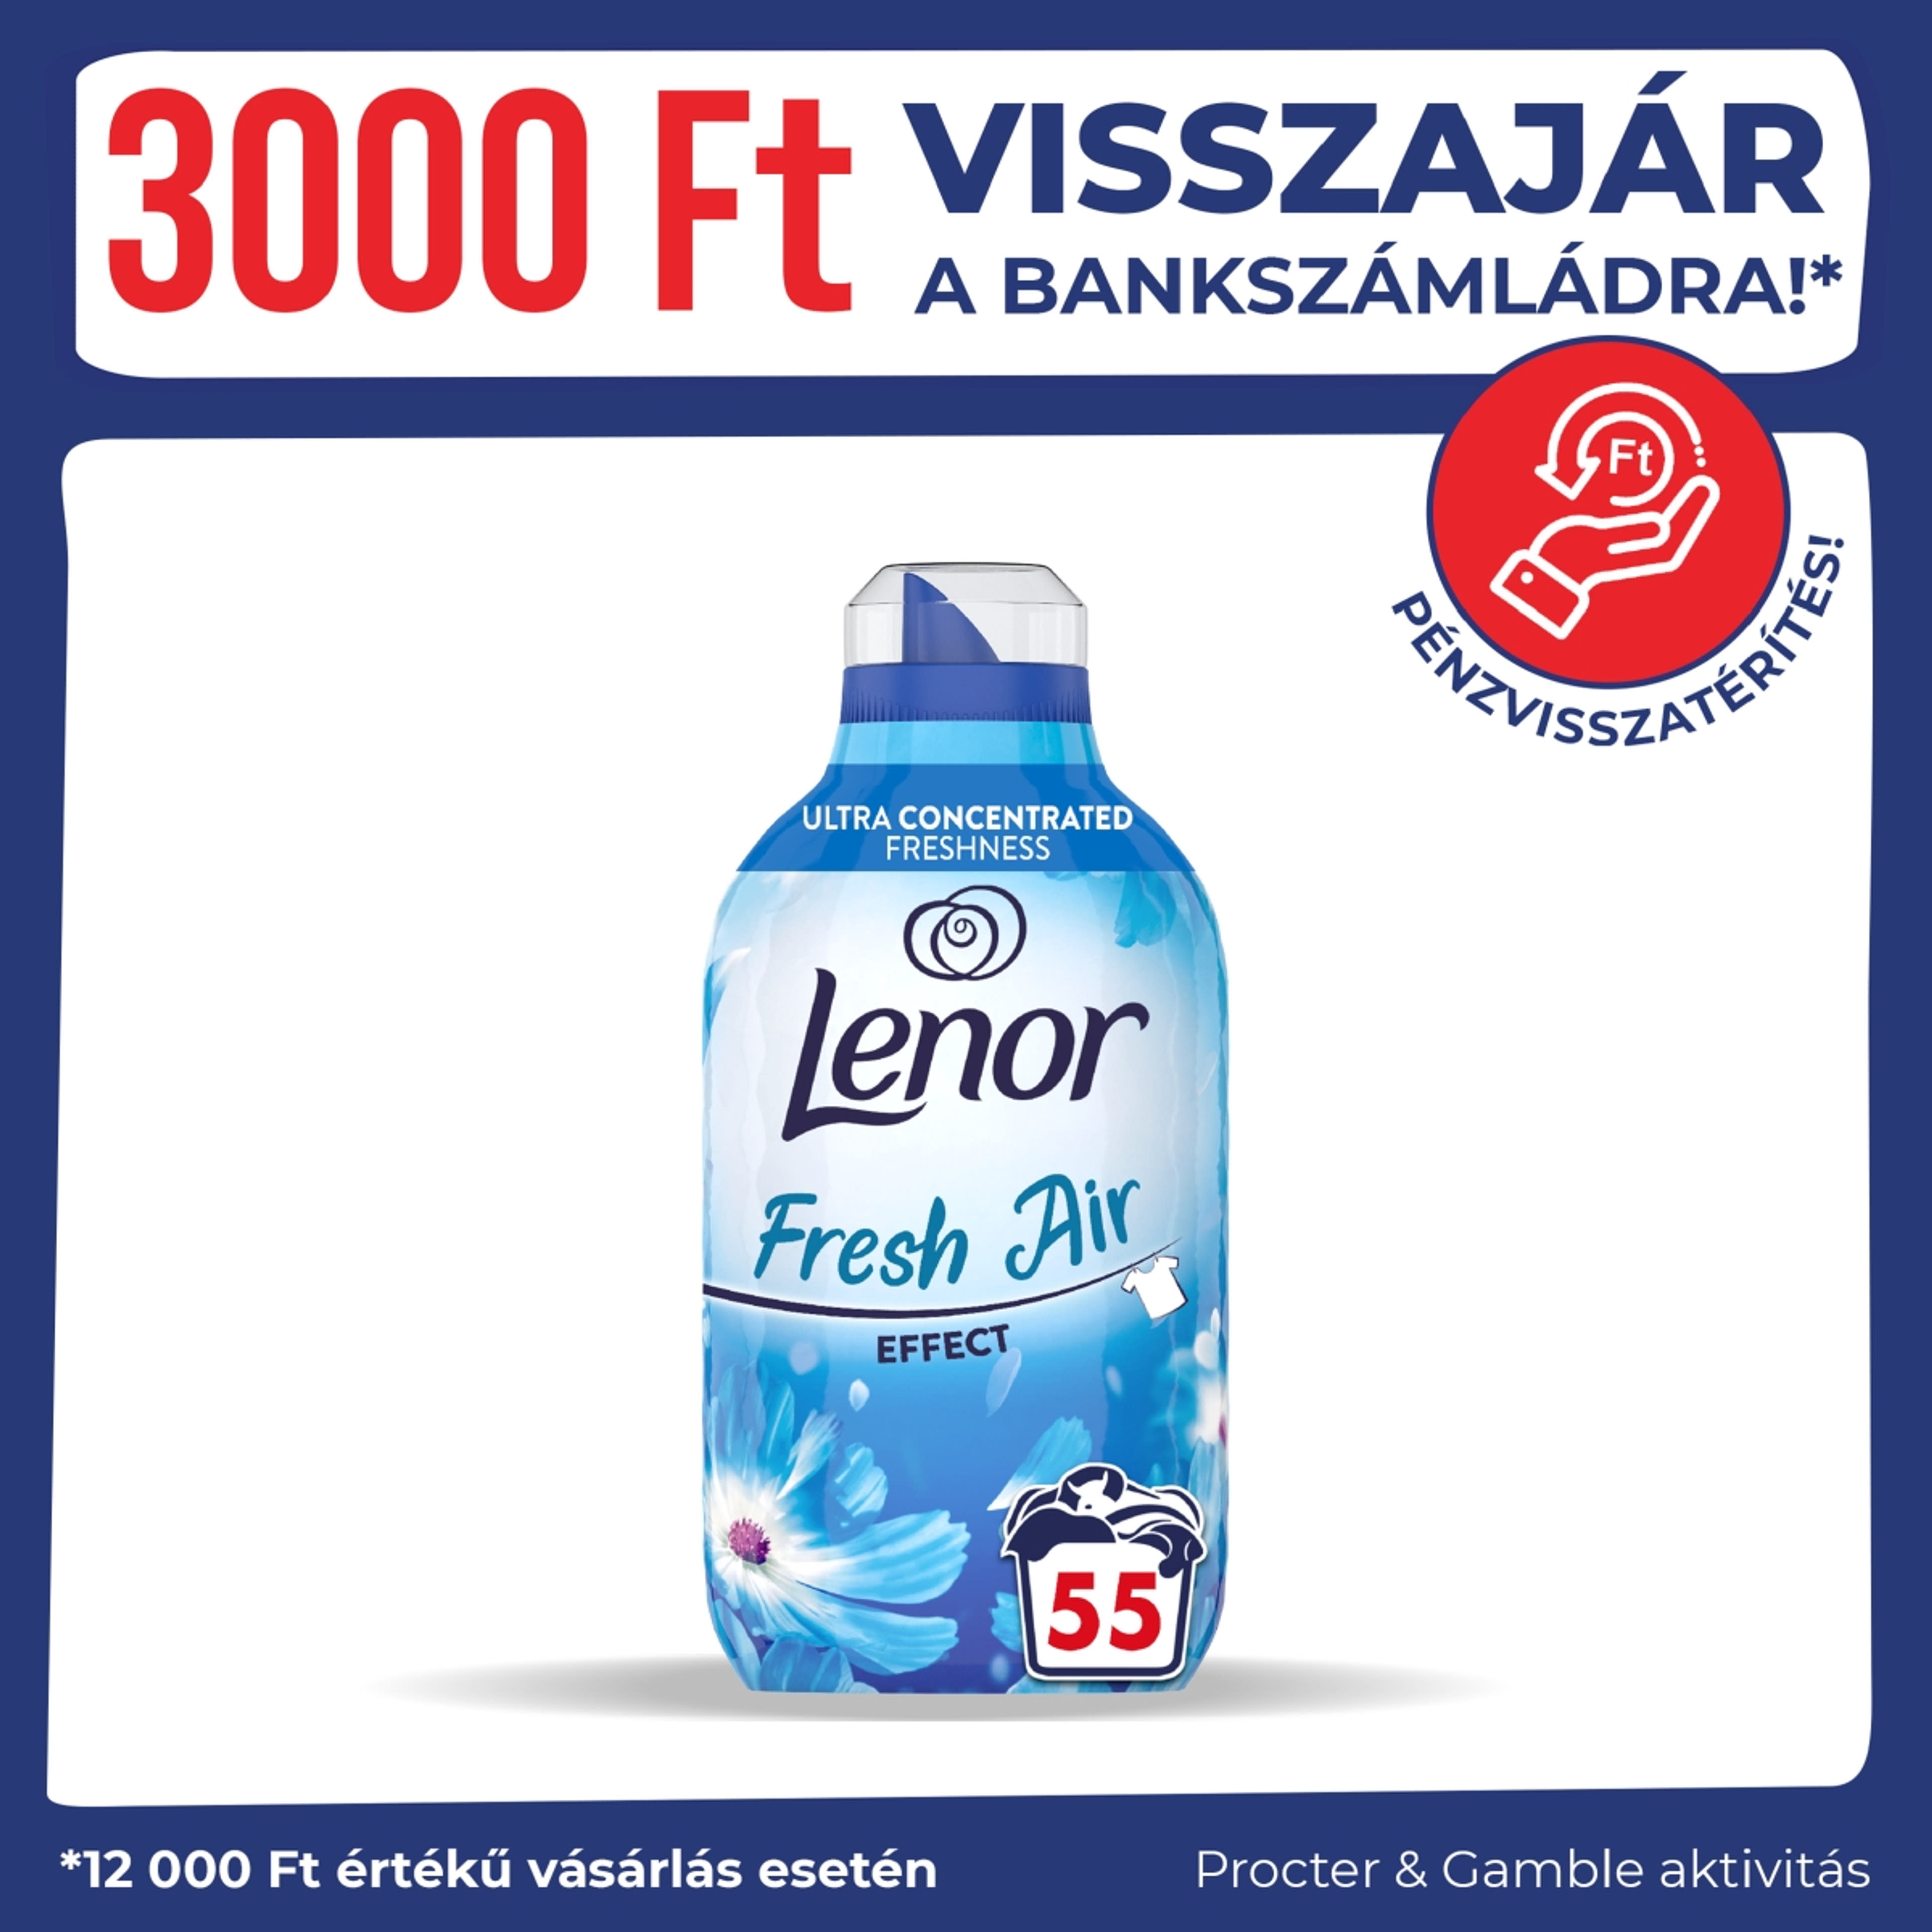 Lenor Fresh Air Effect Fresh Wind textilöblítő 55 mosáshoz - 770 ml-1